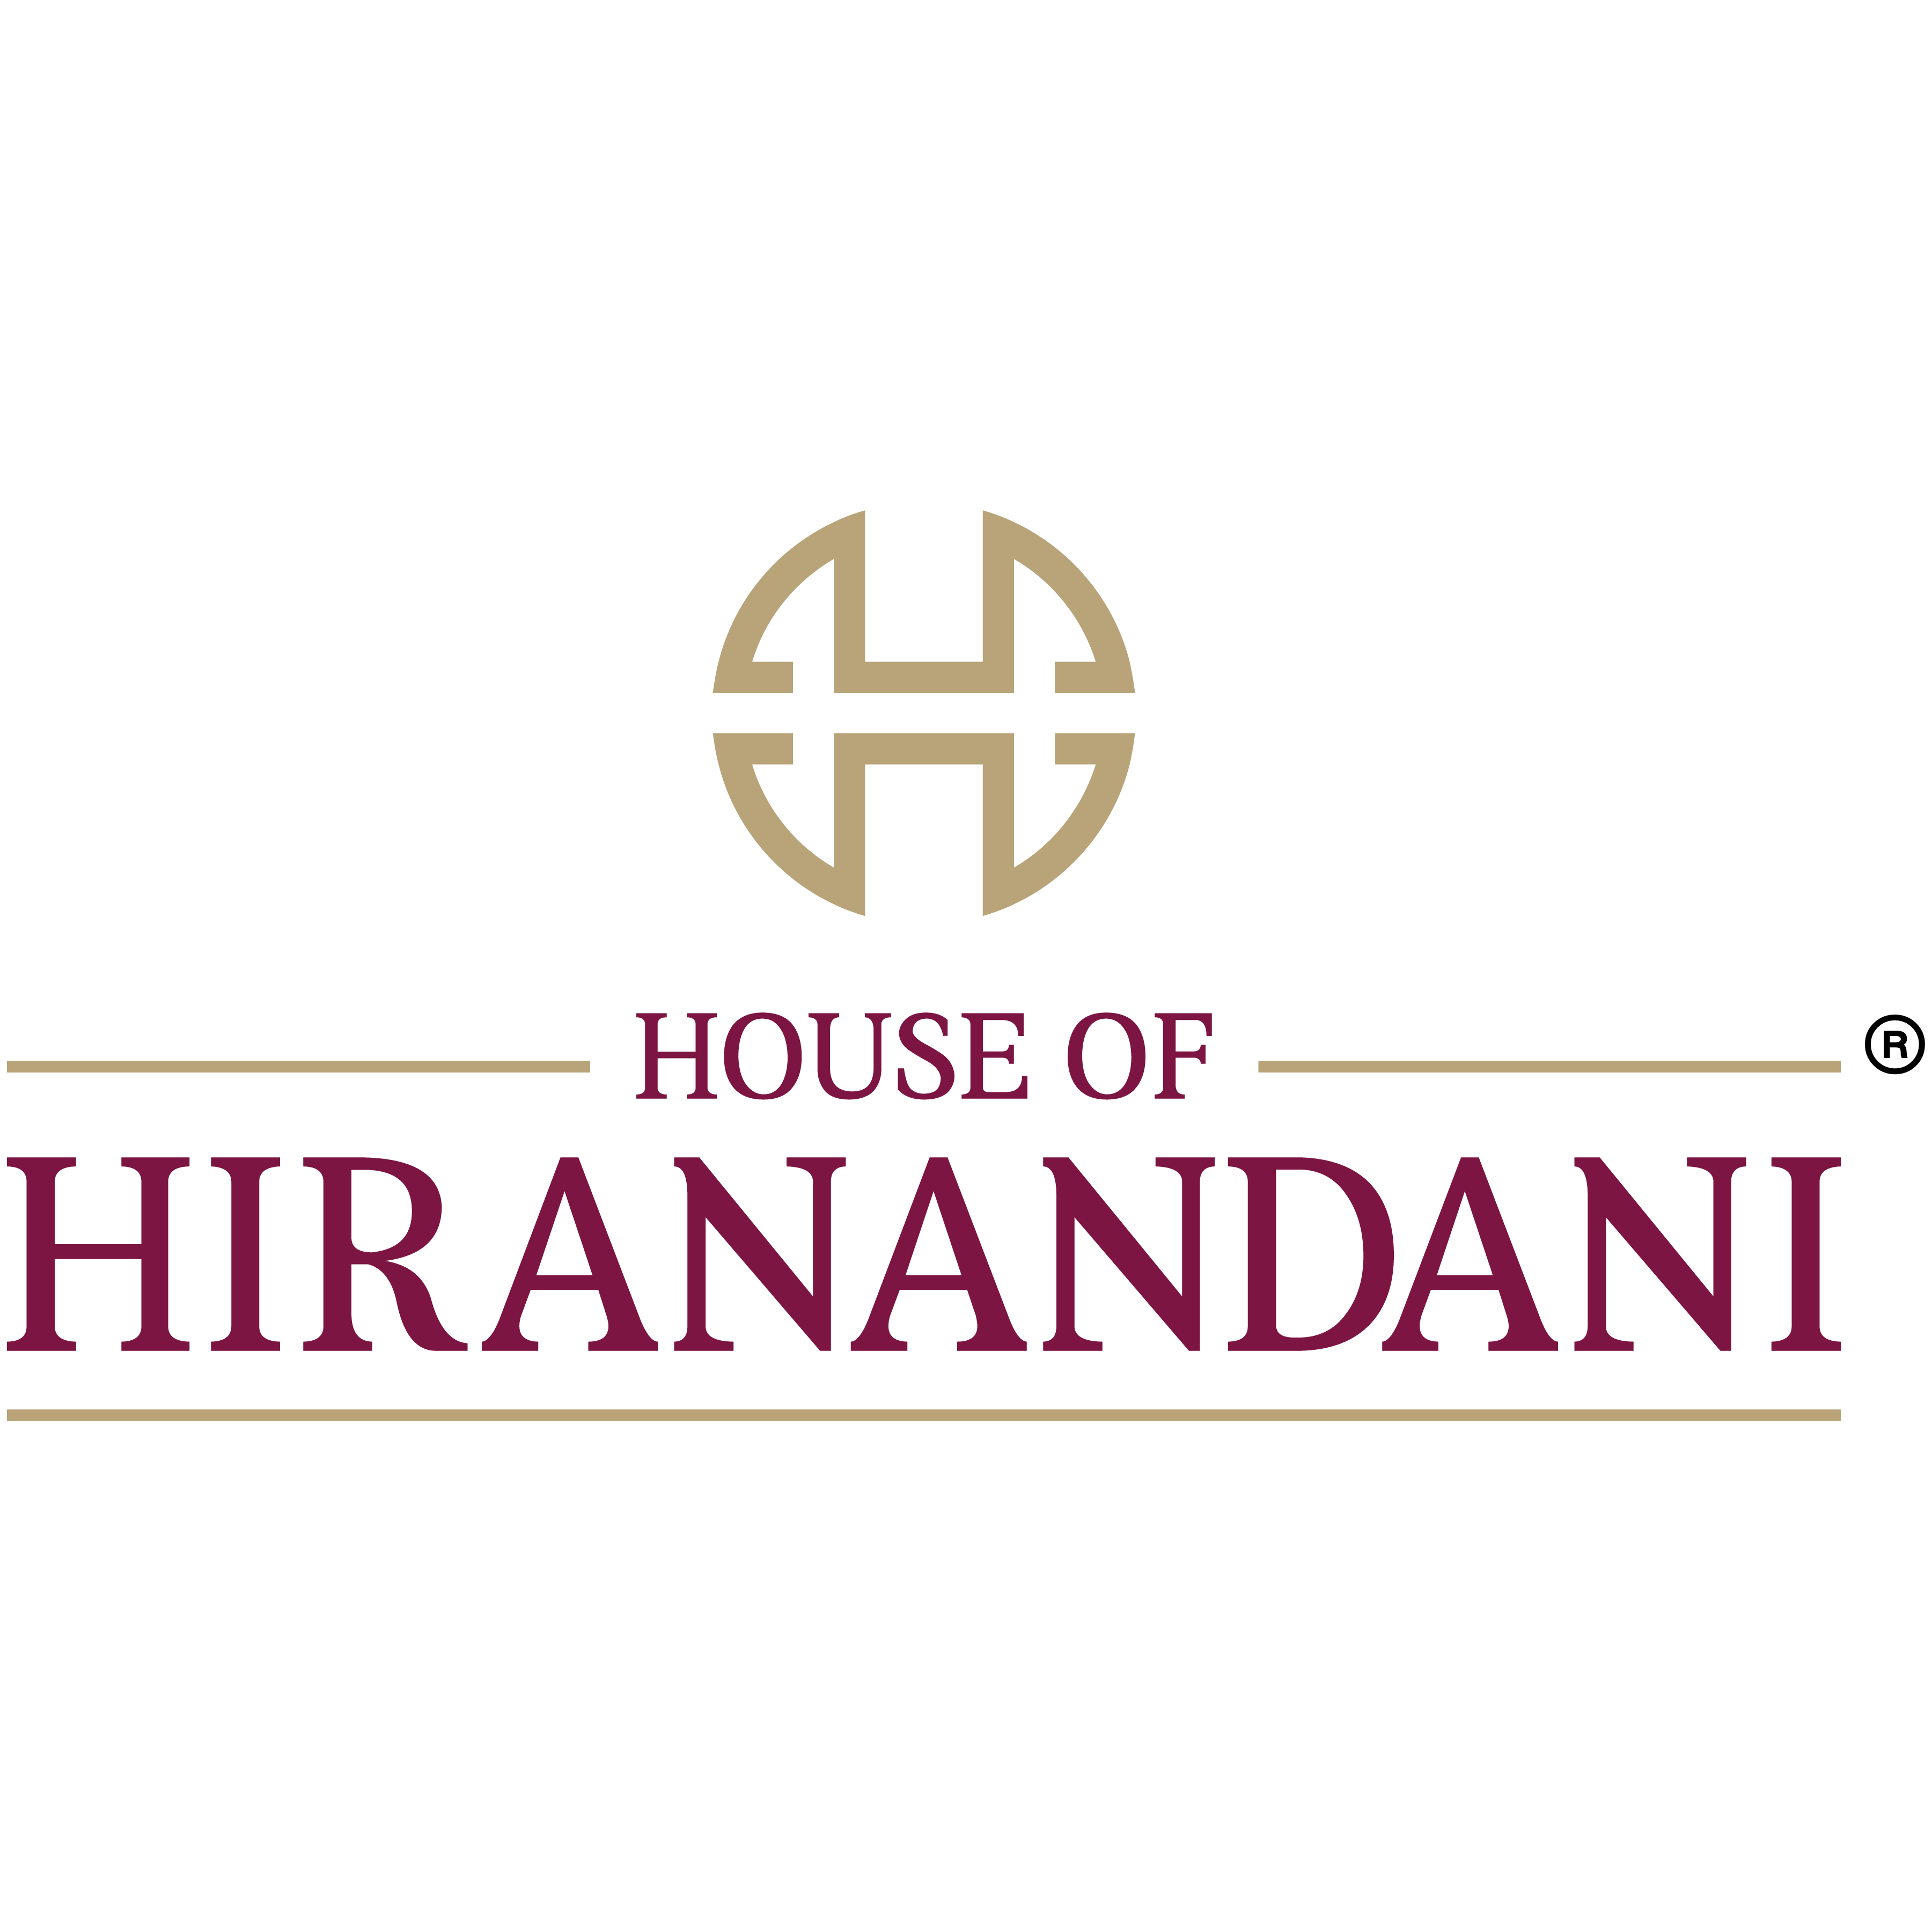 hiranandani